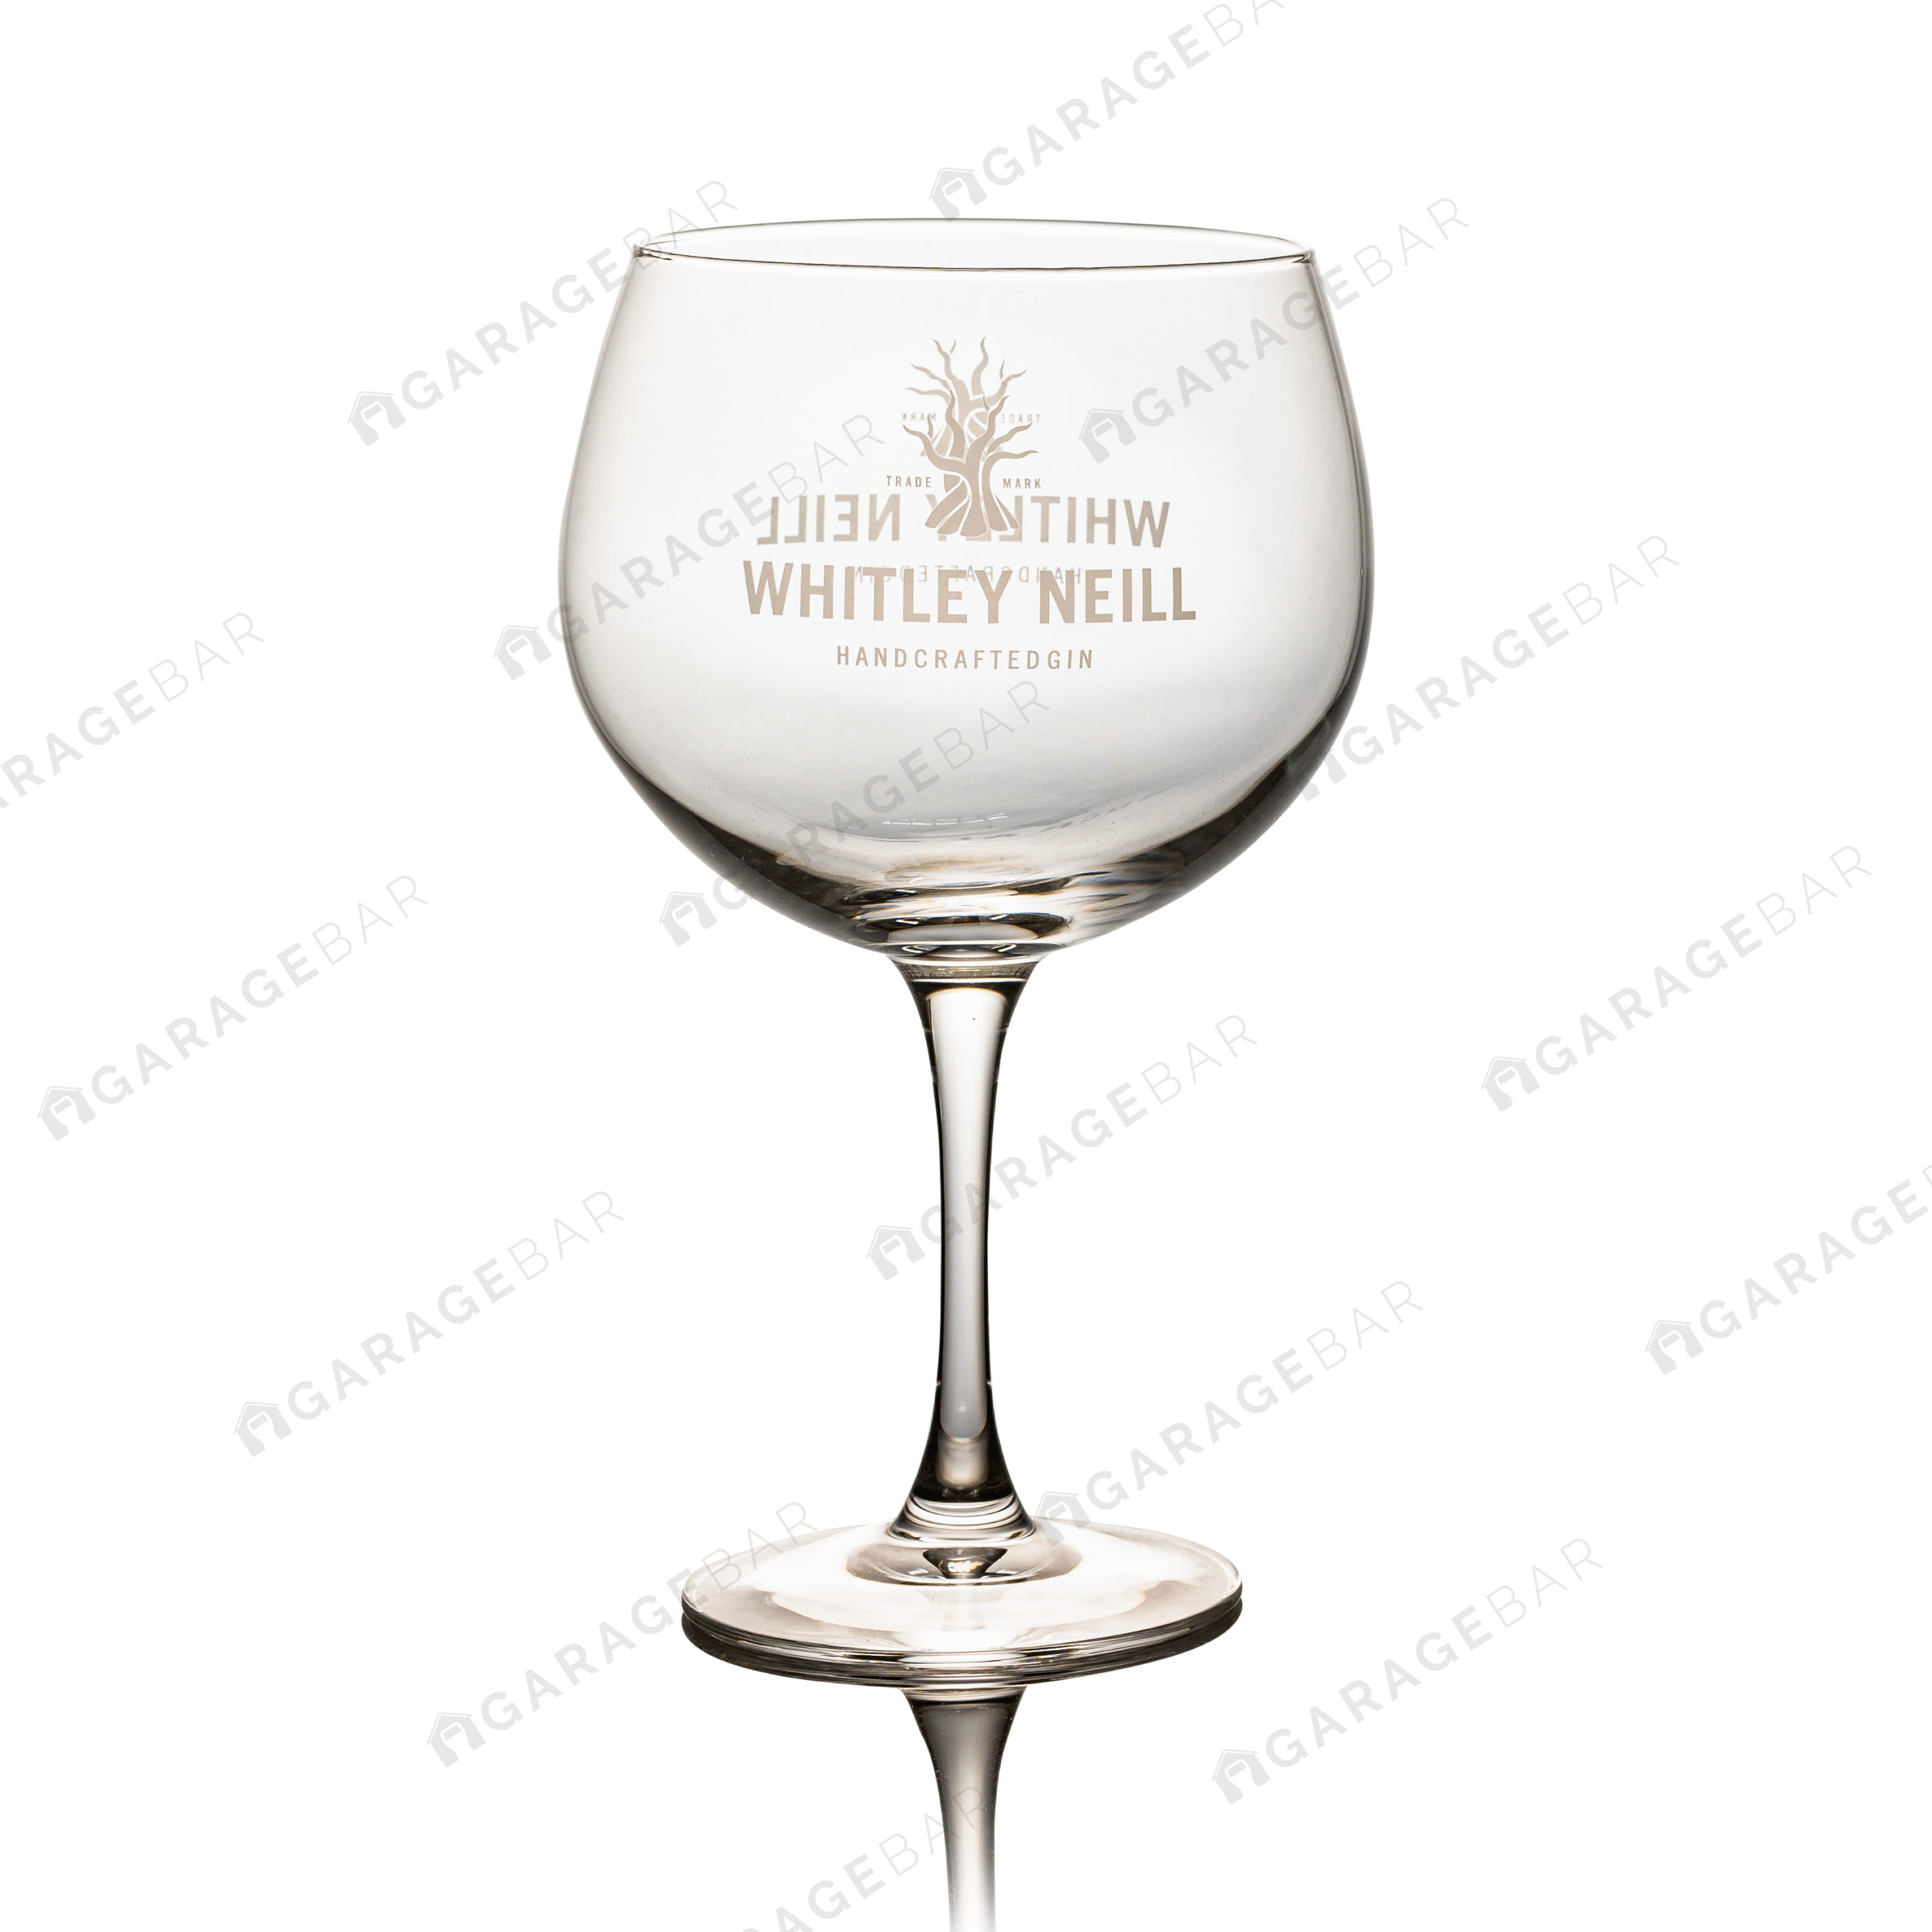 Whitley Neill Glass